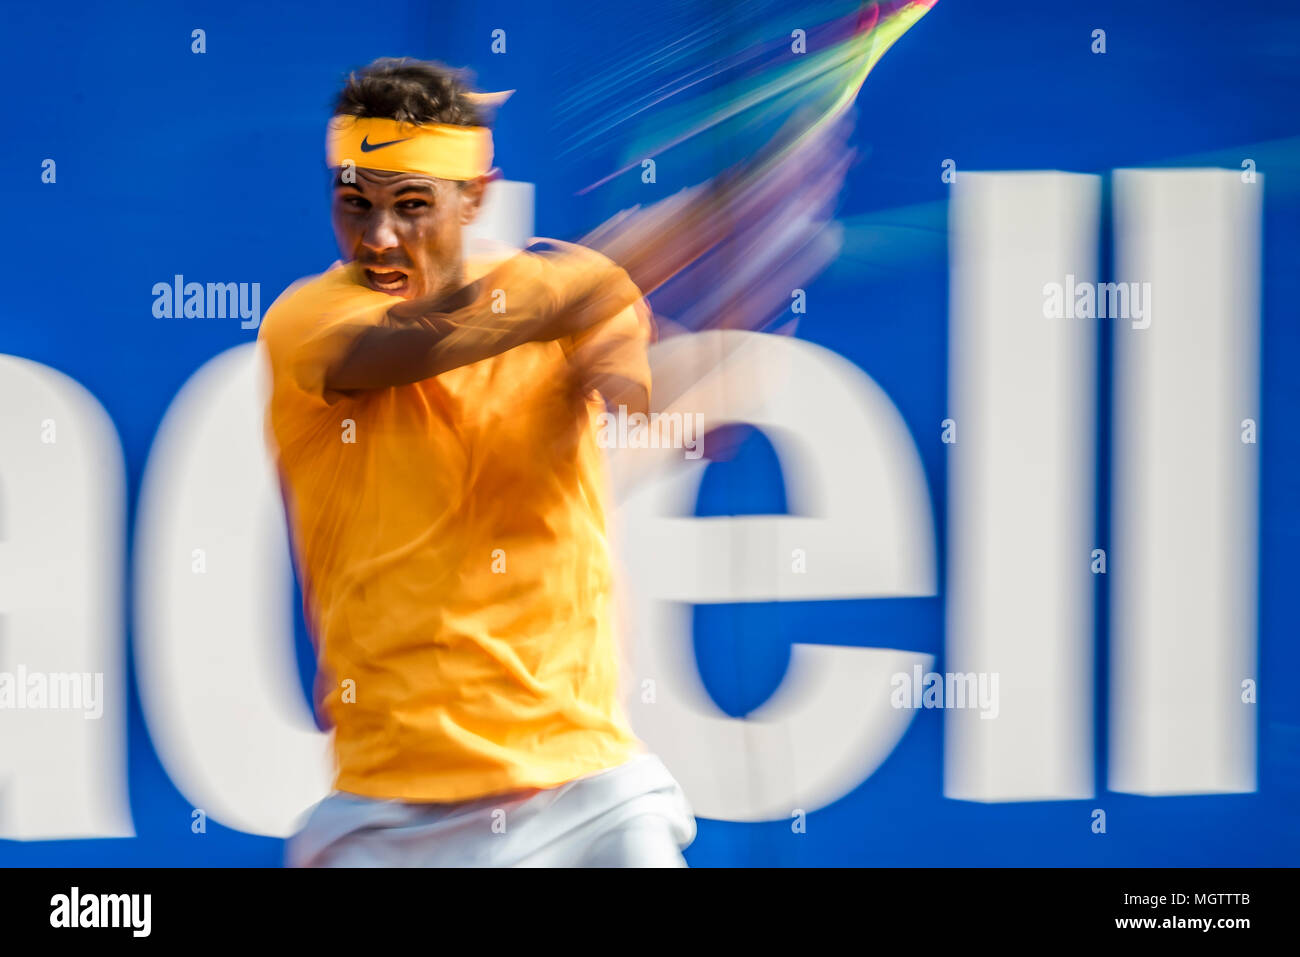 Barcelone, Espagne. 29 avril, 2018 : RAFAEL NADAL (ESP) renvoie la balle à Stefanos Tsitsipas (GRE) dans la finale de l'Open de Barcelone Banc Sabadell' 2018. Nadal a gagné 6:2, 6:1 Banque D'Images